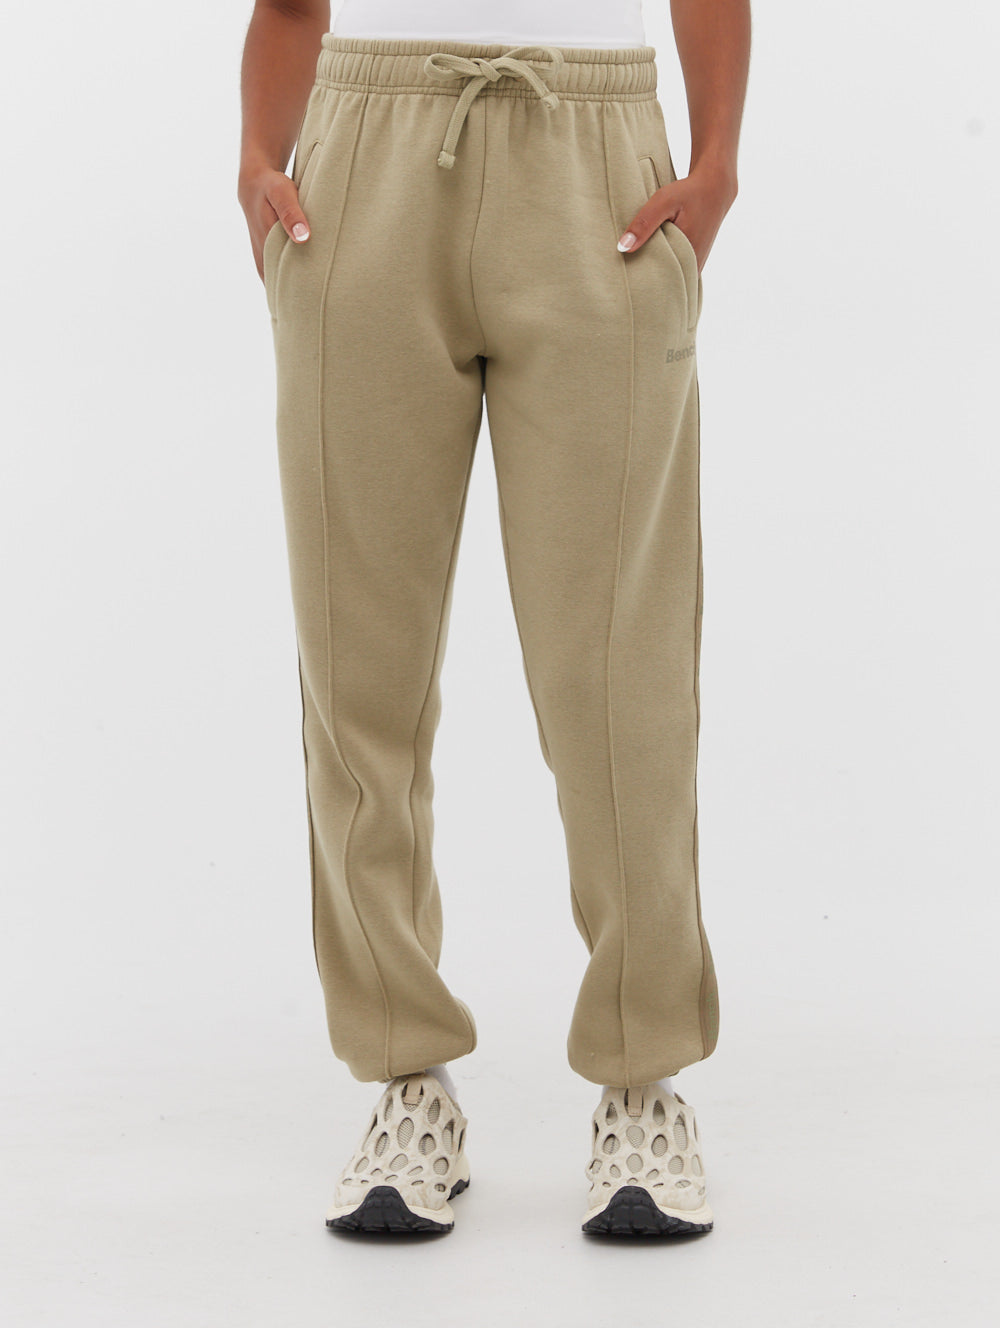 Men's Marled Knit Jogger Pants - Walmart.com  Knit jogger pants, Mens  outfits, Mens loungewear